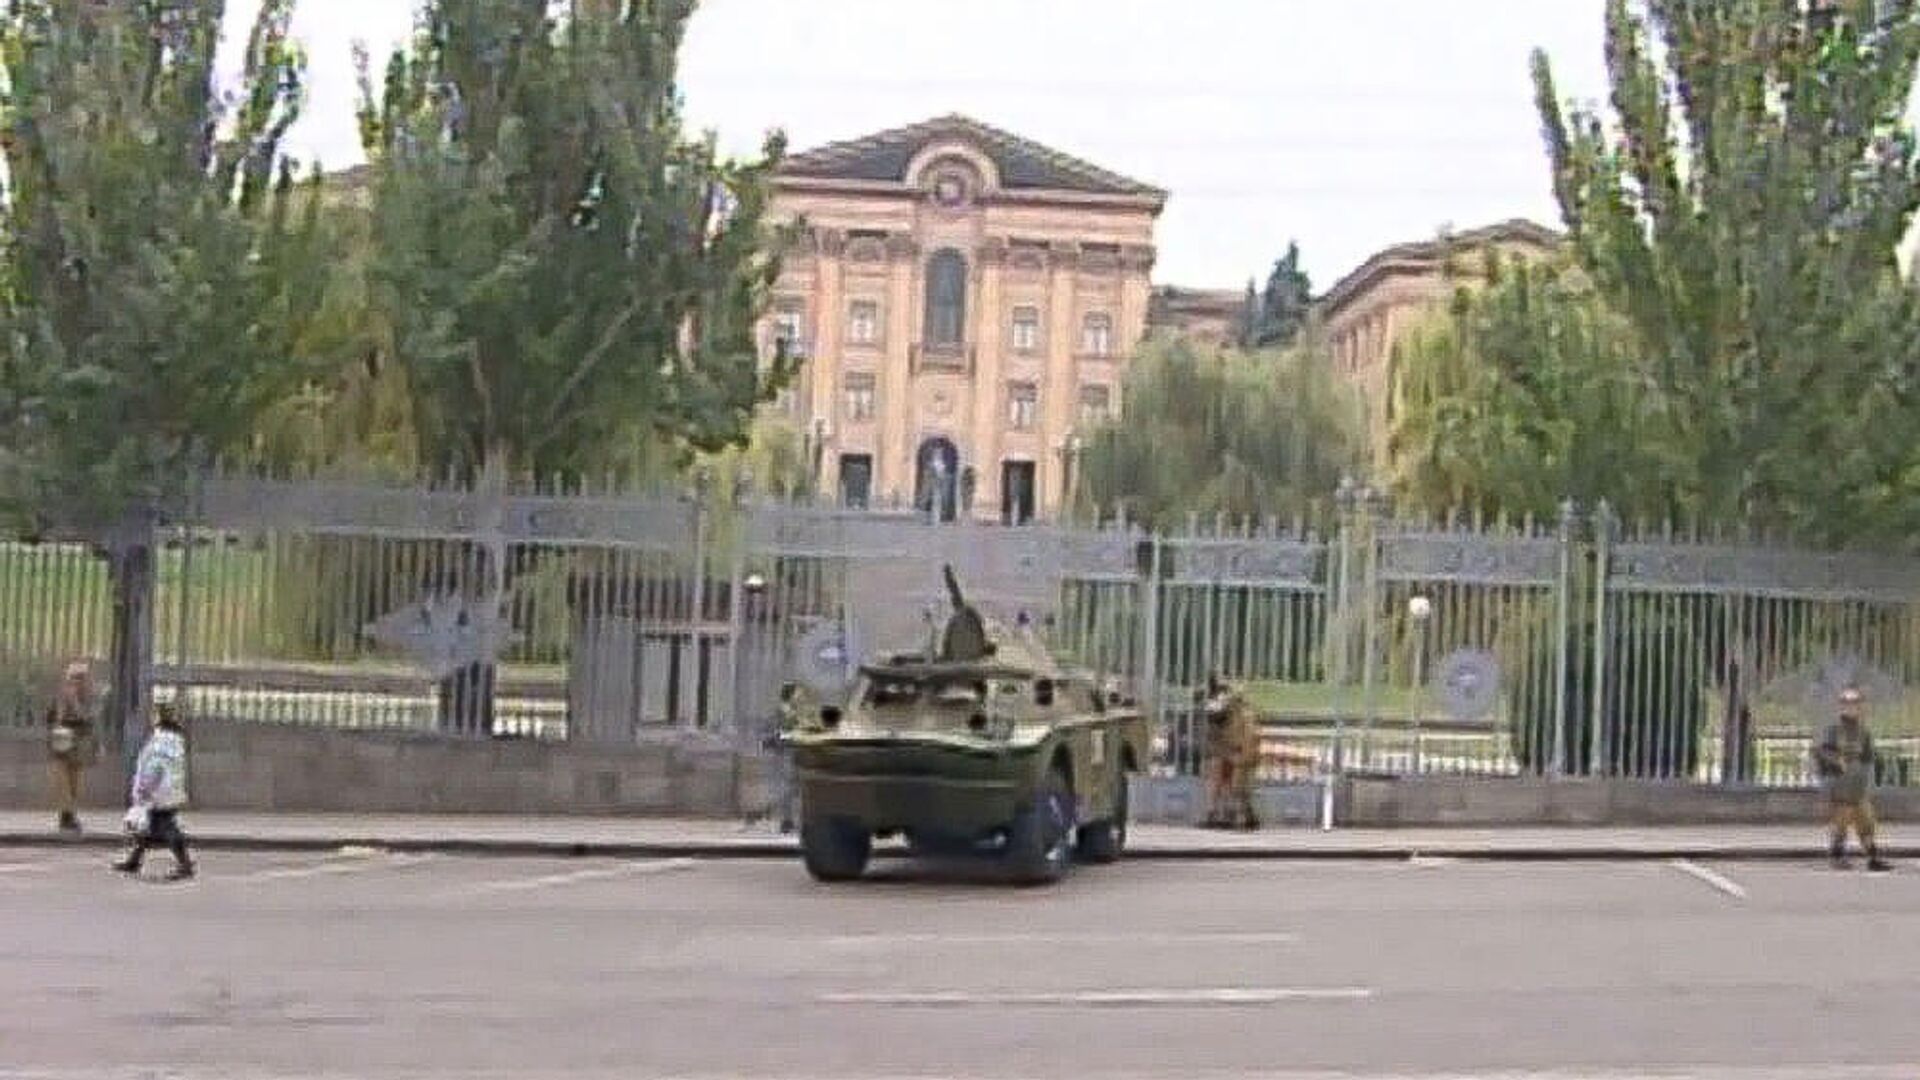 Бронетехника перед зданием Национального собрания Армении после инцидента 27 октября 1999 года - Sputnik Армения, 1920, 27.10.2021